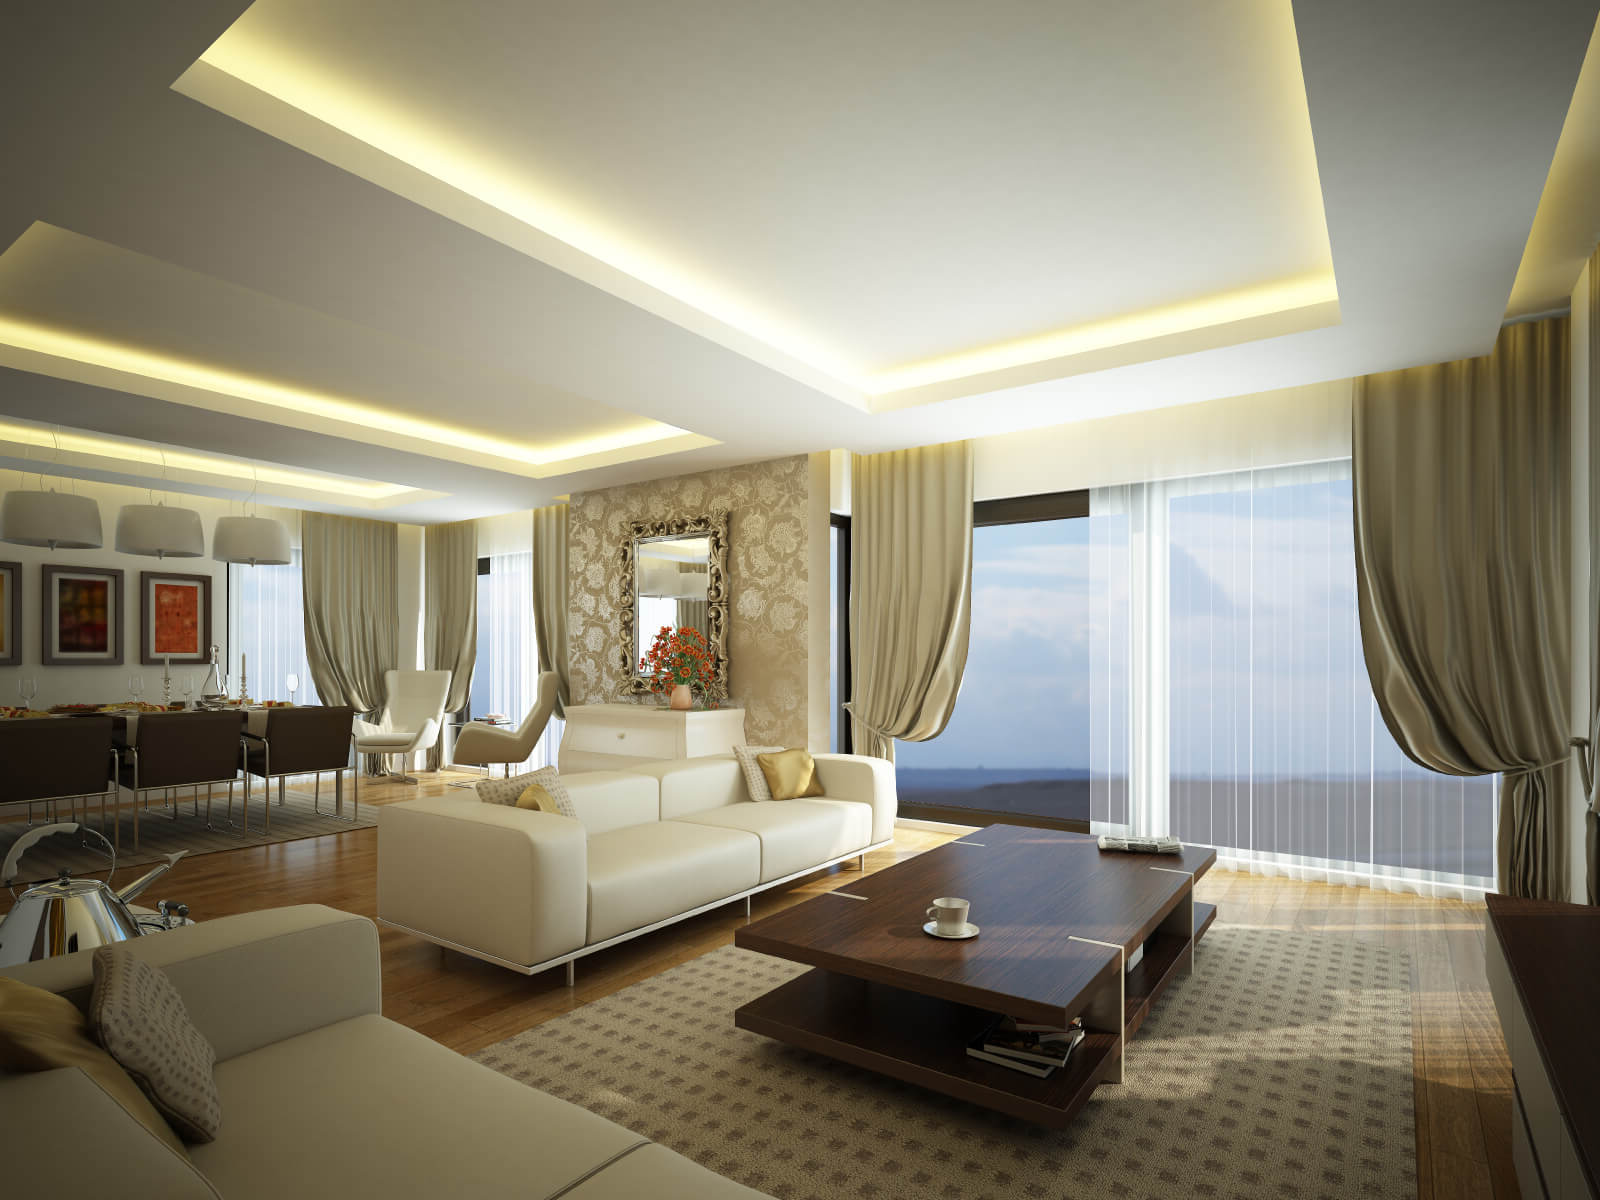 Living Room Lighting Ideas For High Ceilings